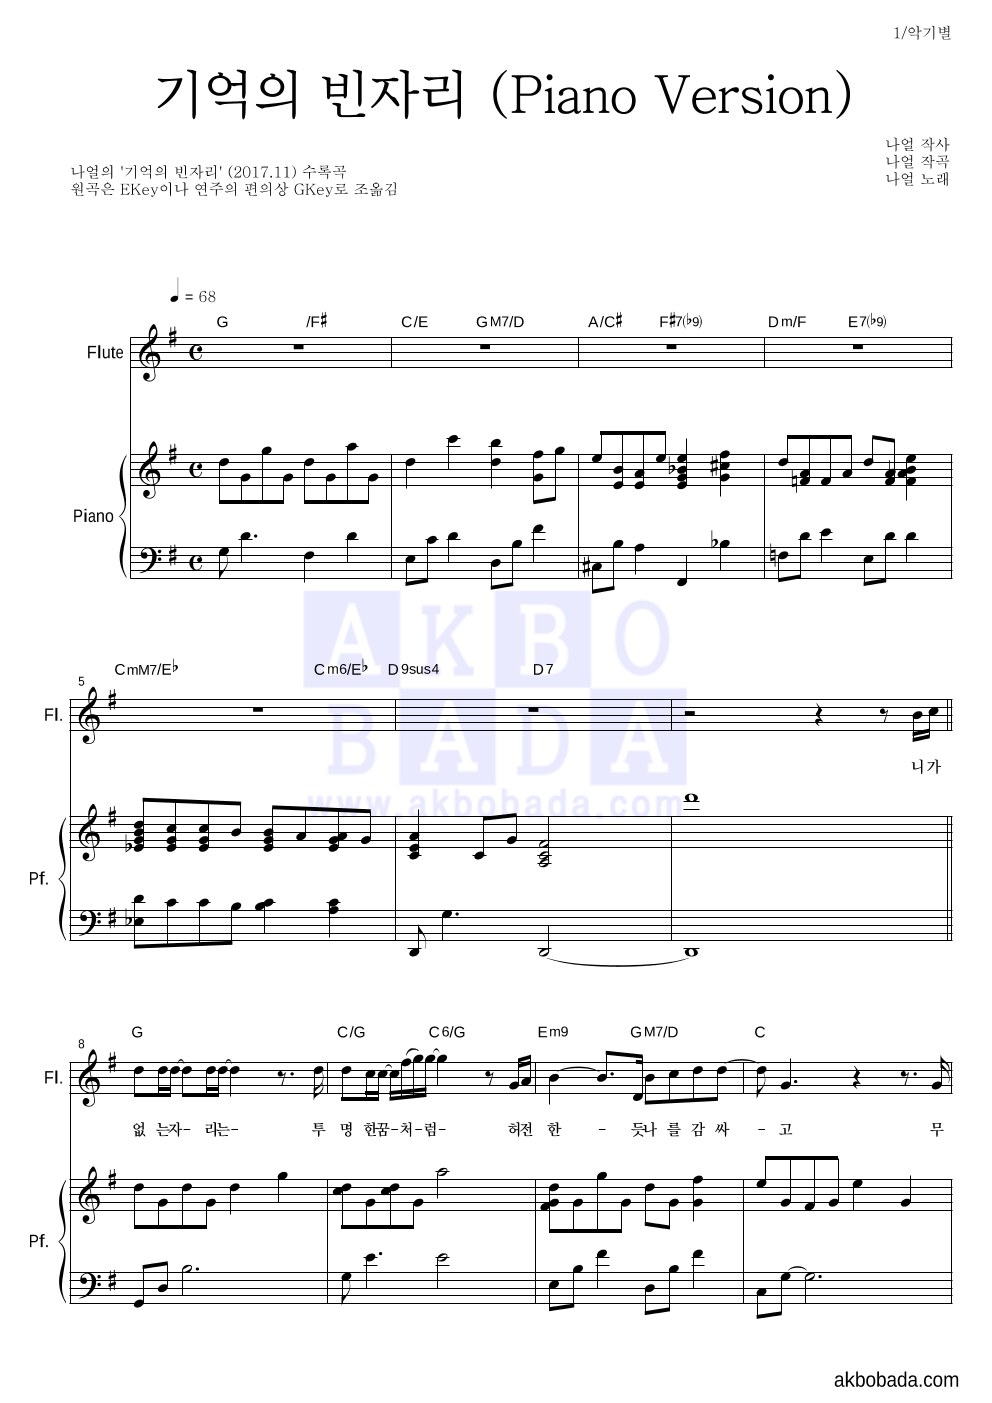 나얼 - 기억의 빈자리 (Piano Version) 플룻&피아노 악보 